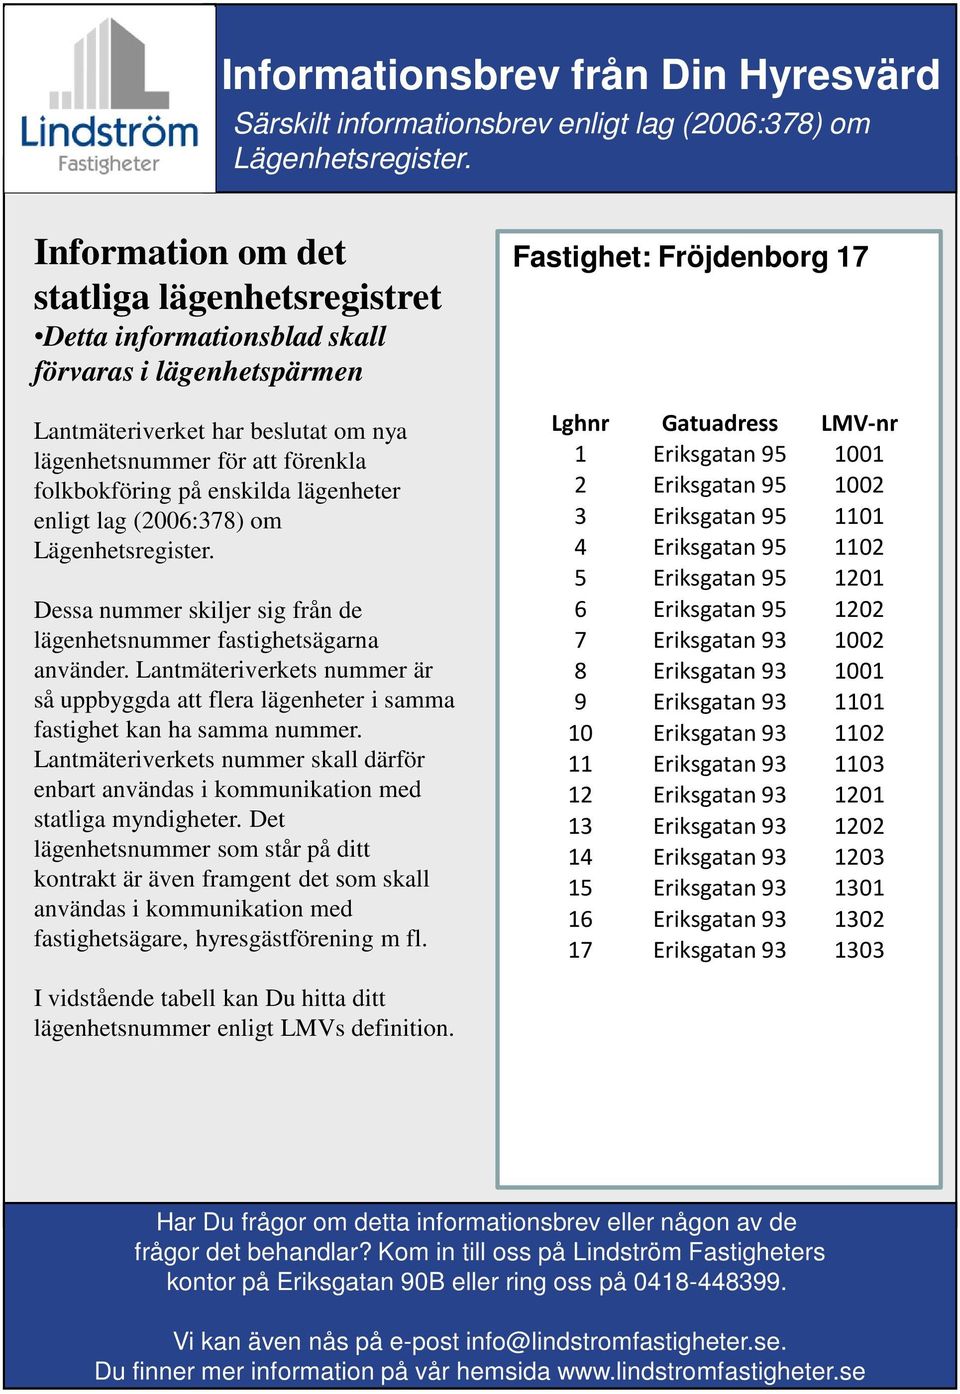 1001 9 Eriksgatan 93 1101 10 Eriksgatan 93 1102 11 Eriksgatan 93 1103 12 Eriksgatan 93 1201 13